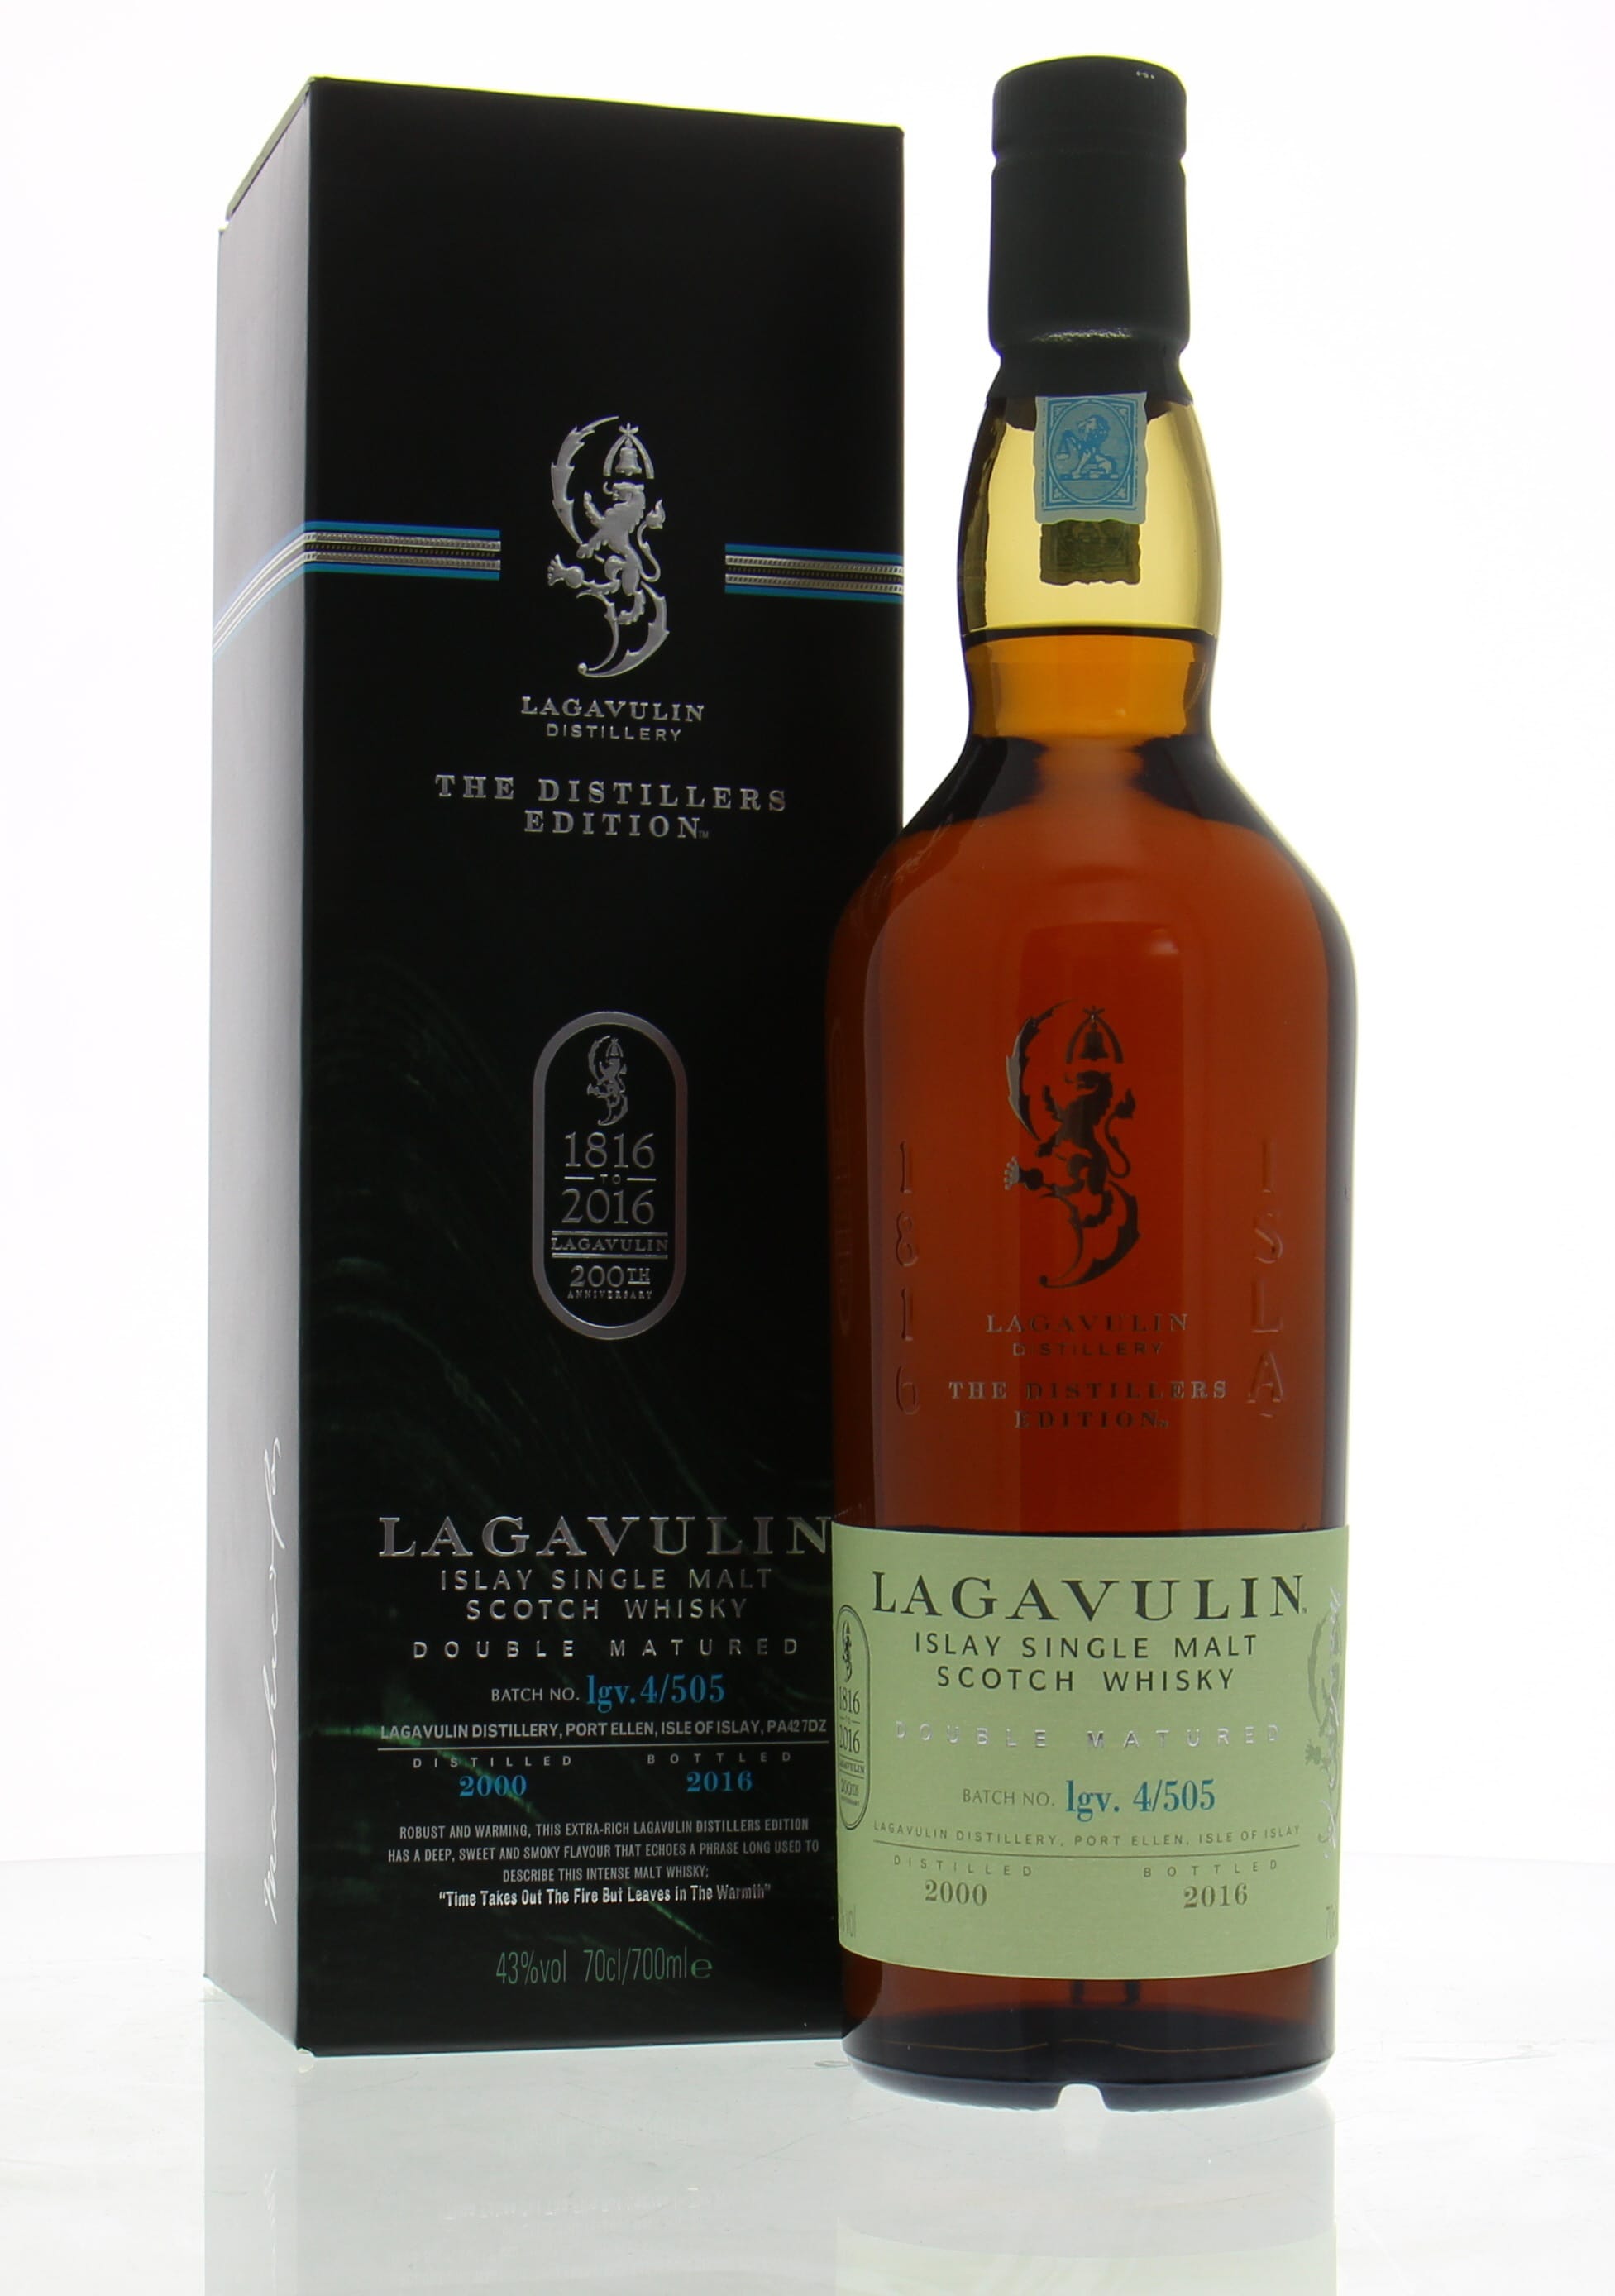 Lagavulin - Distillers Edition 2016 43% nv